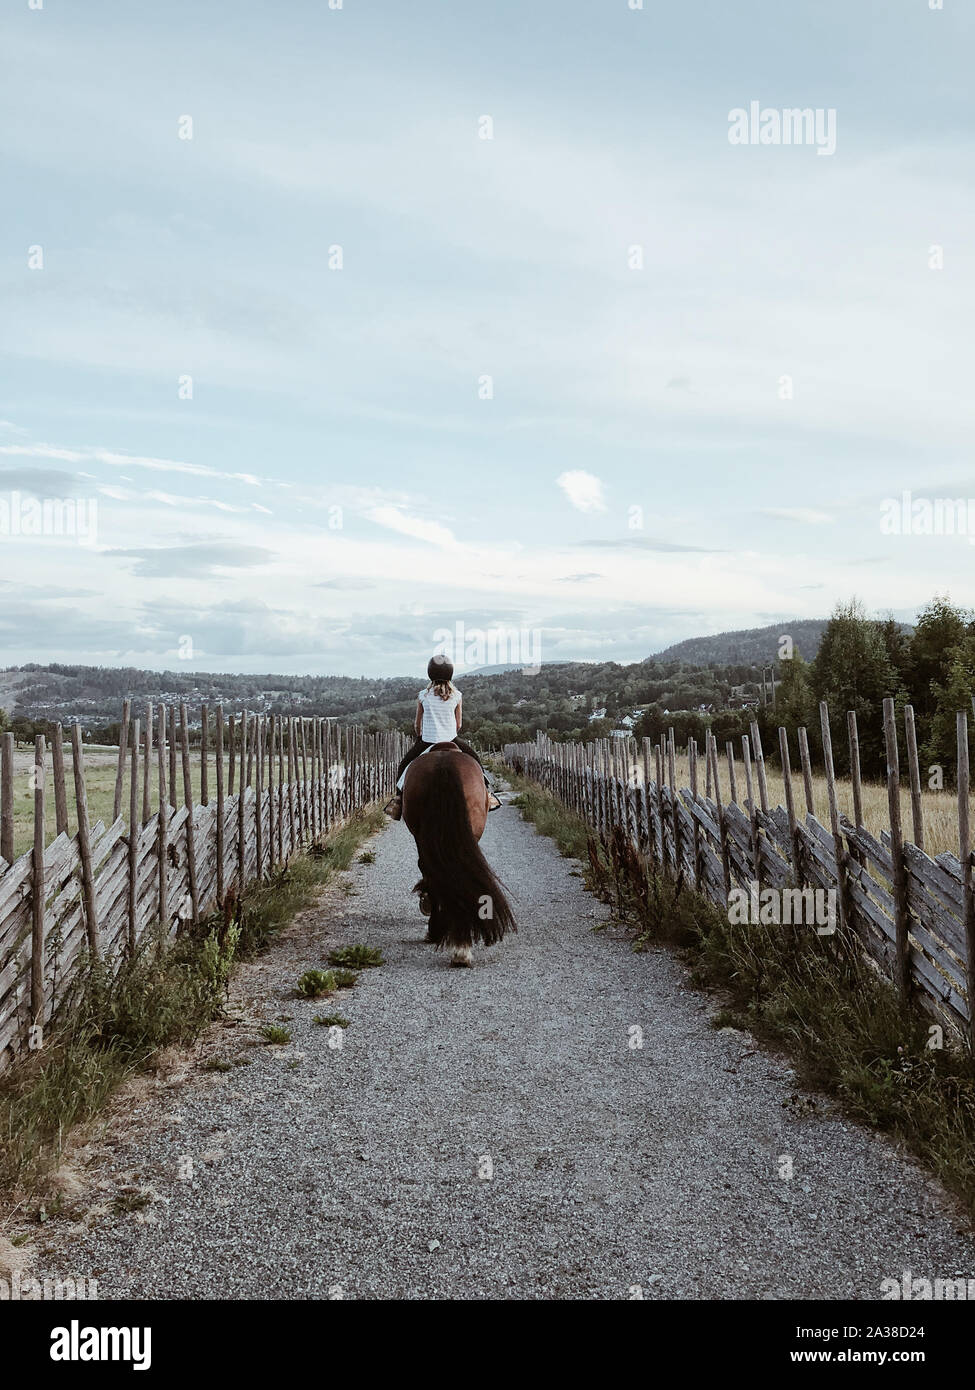 Vista posteriore di una ragazza in sella ad un cavallo, Norvegia Foto Stock